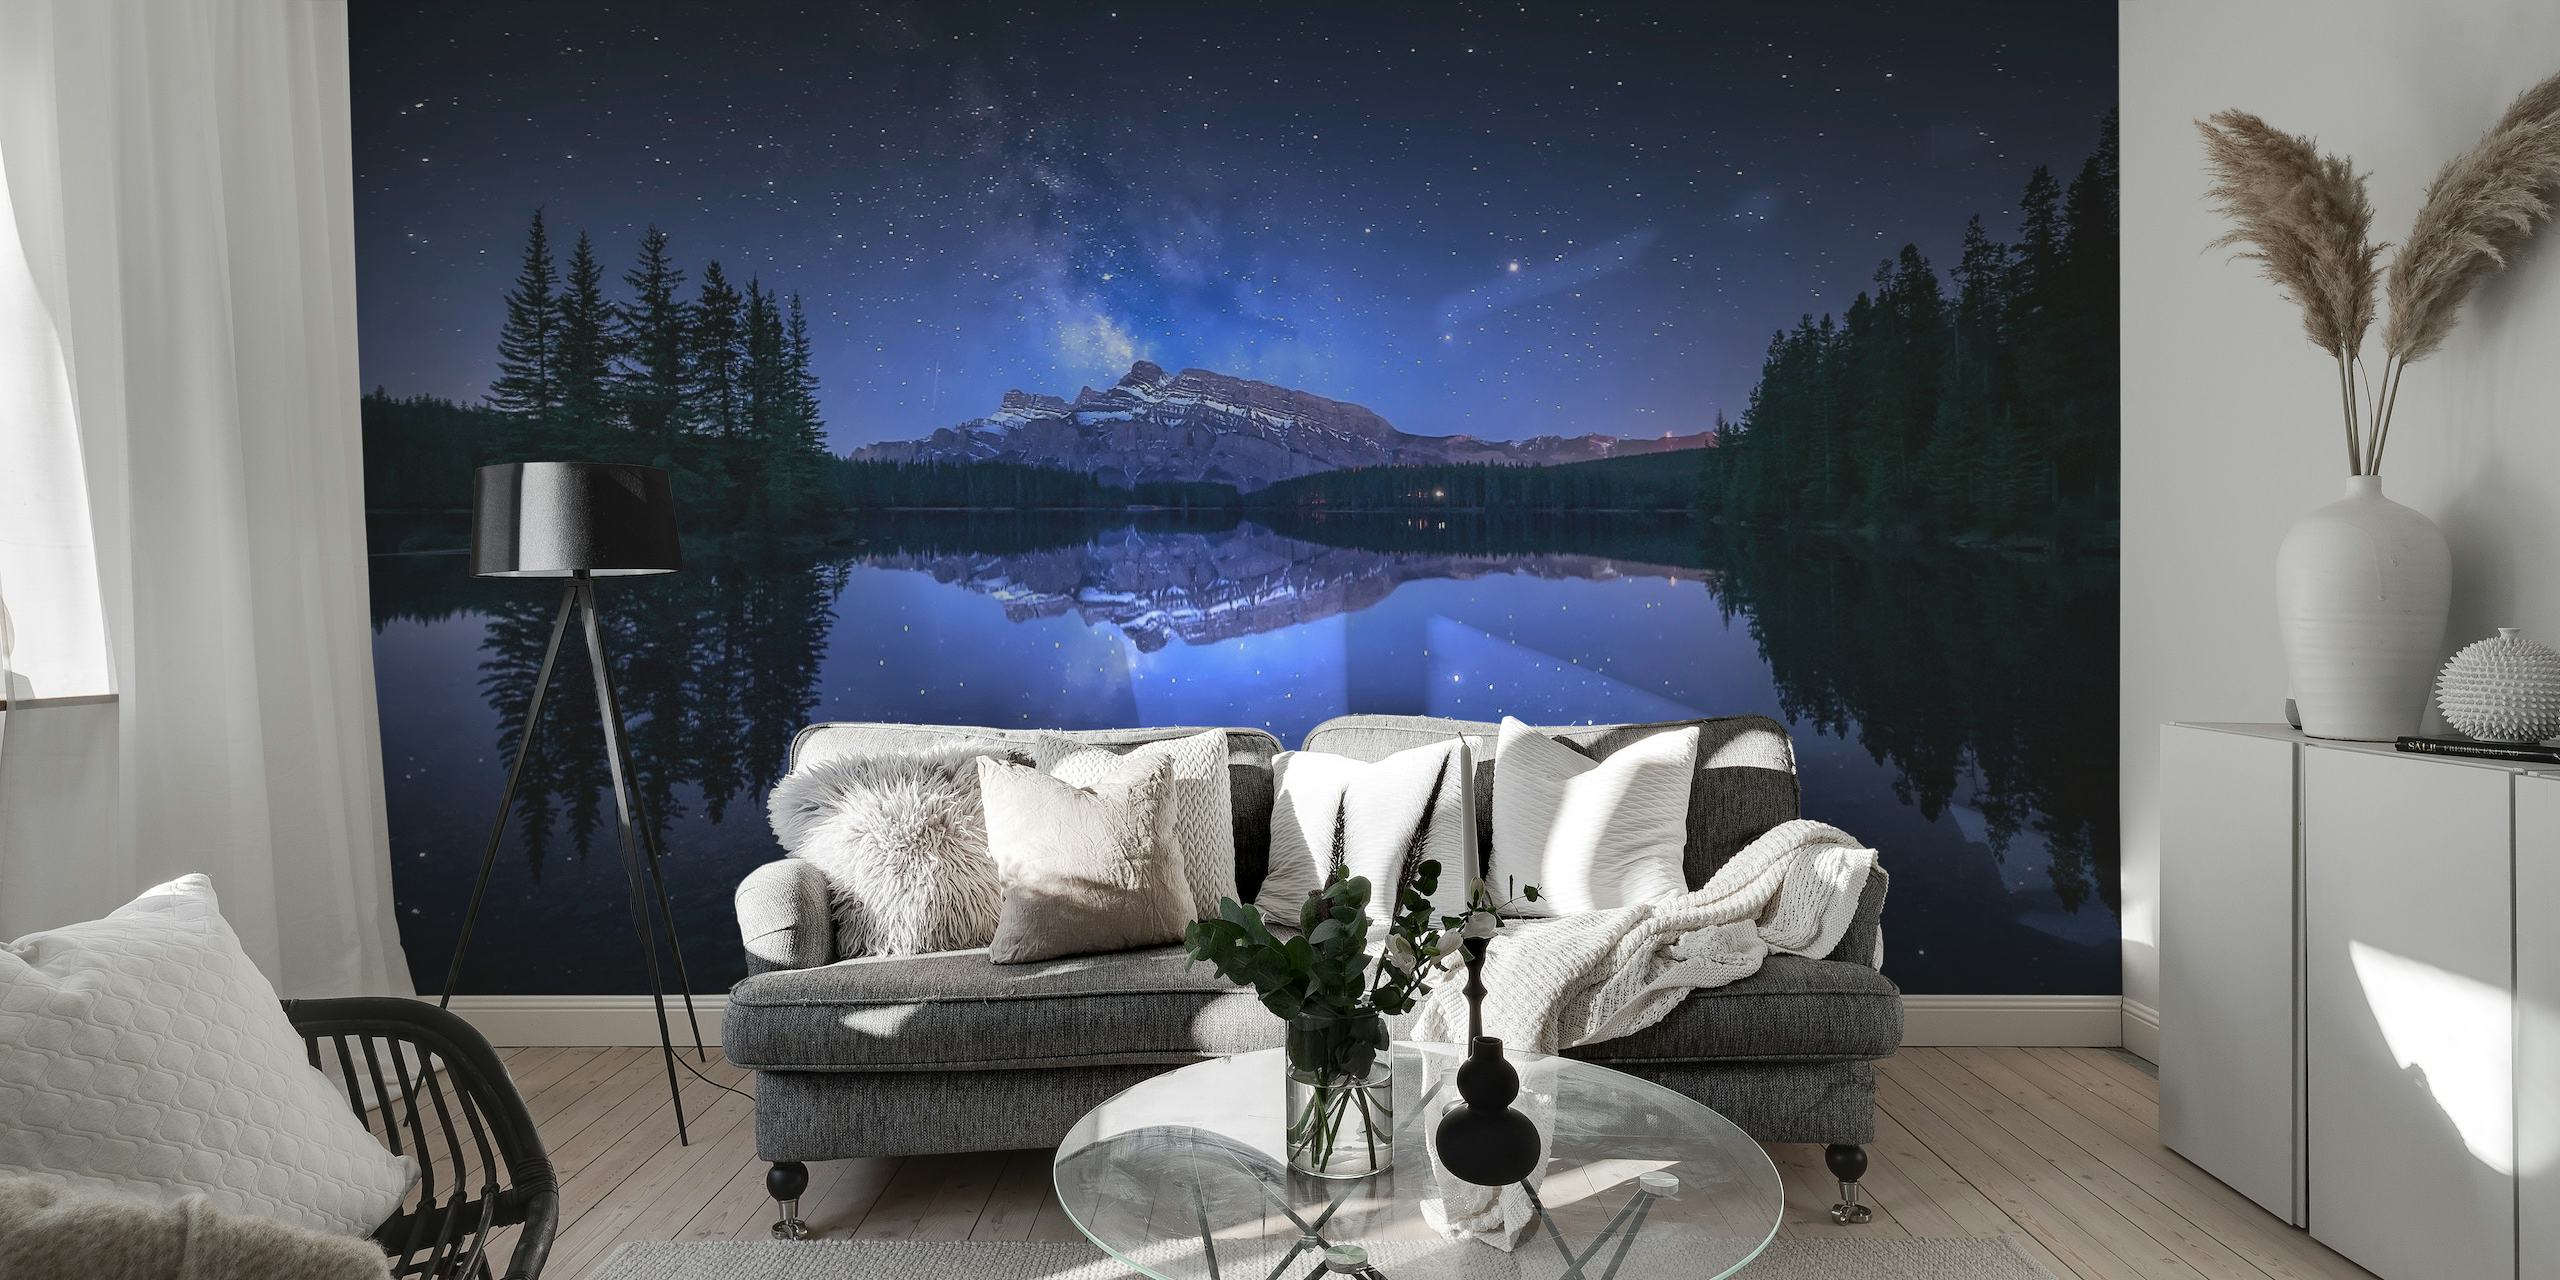 Tähtikirkas yö Two Jack Laken yllä, metsäsiluetti ja lumoava heijastus vesiseinämaalauksessa